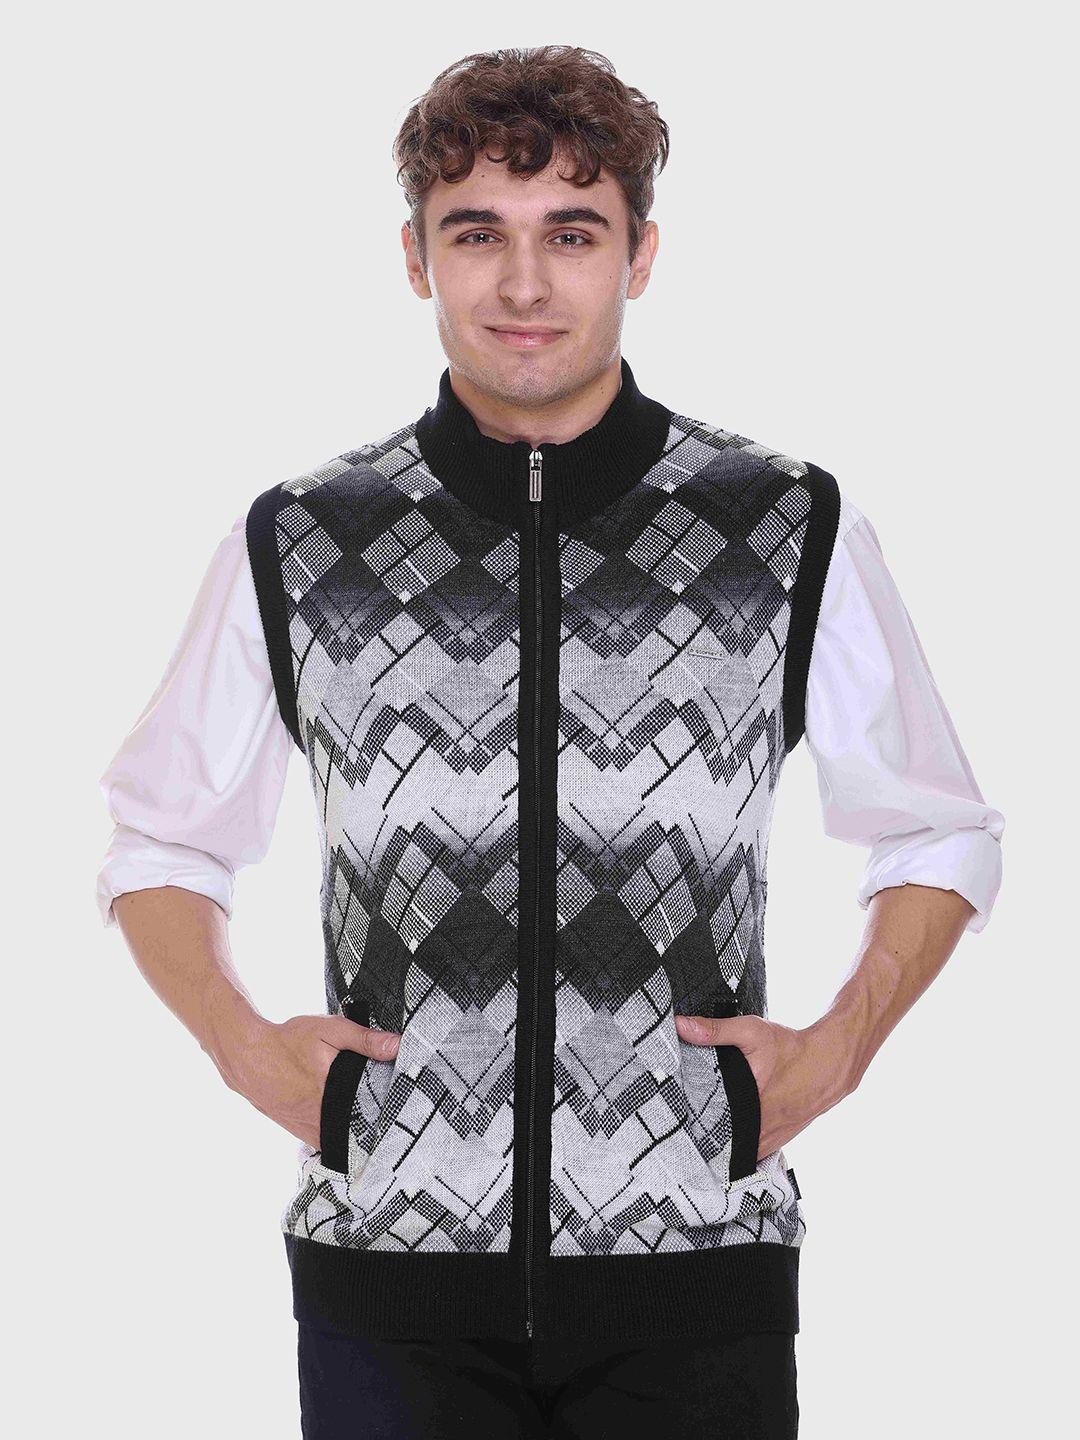 godfrey men geometric wool sweater vest